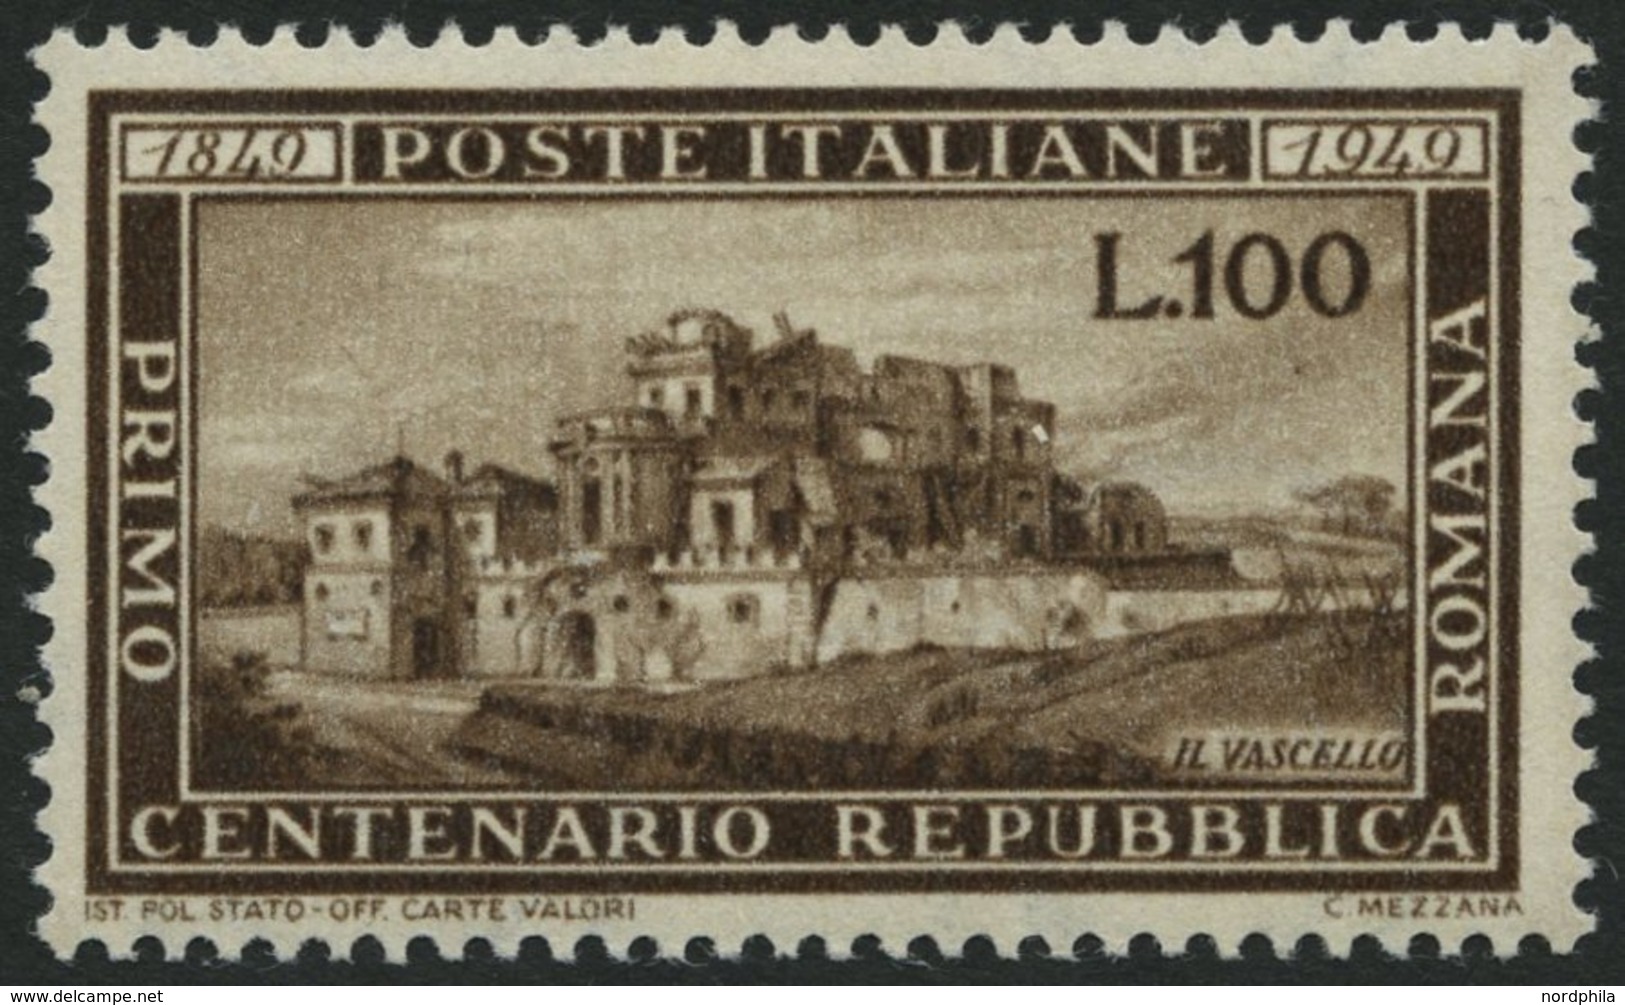 ITALIEN 773 **, 1949, 100 L. Republica Romana, Pracht, Mi. 300.- - Mint/hinged